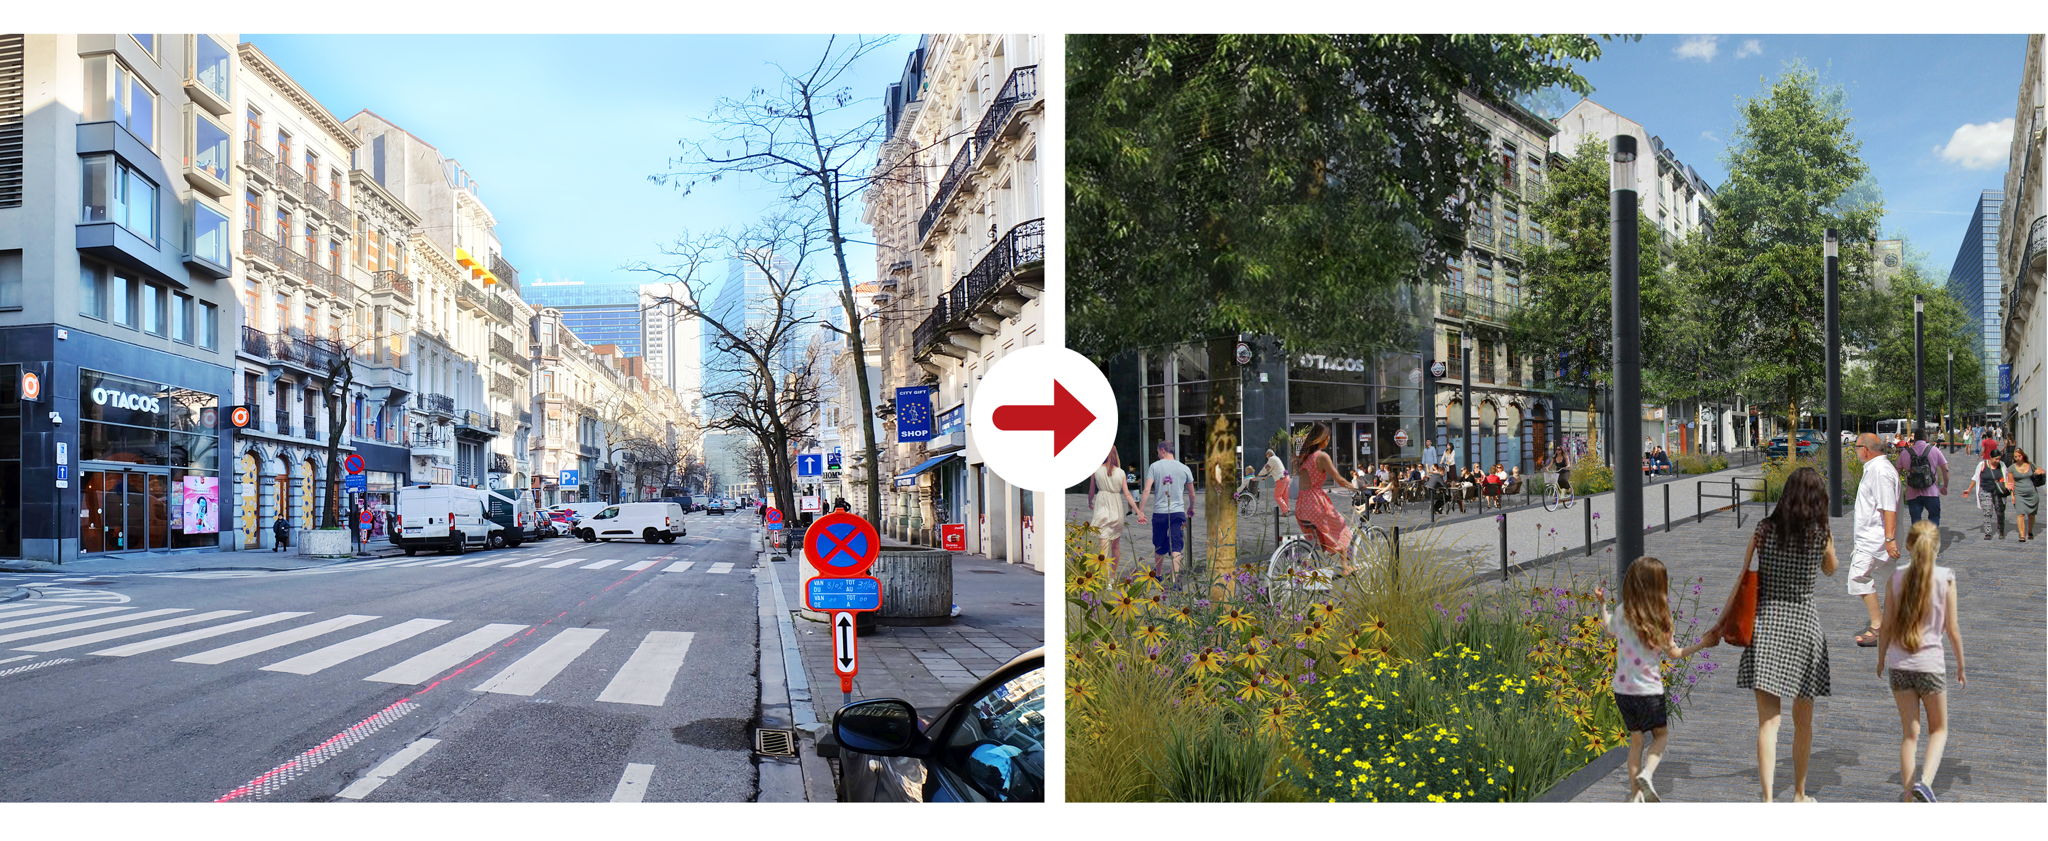 Boulevard Adolphe Max, avant et après.